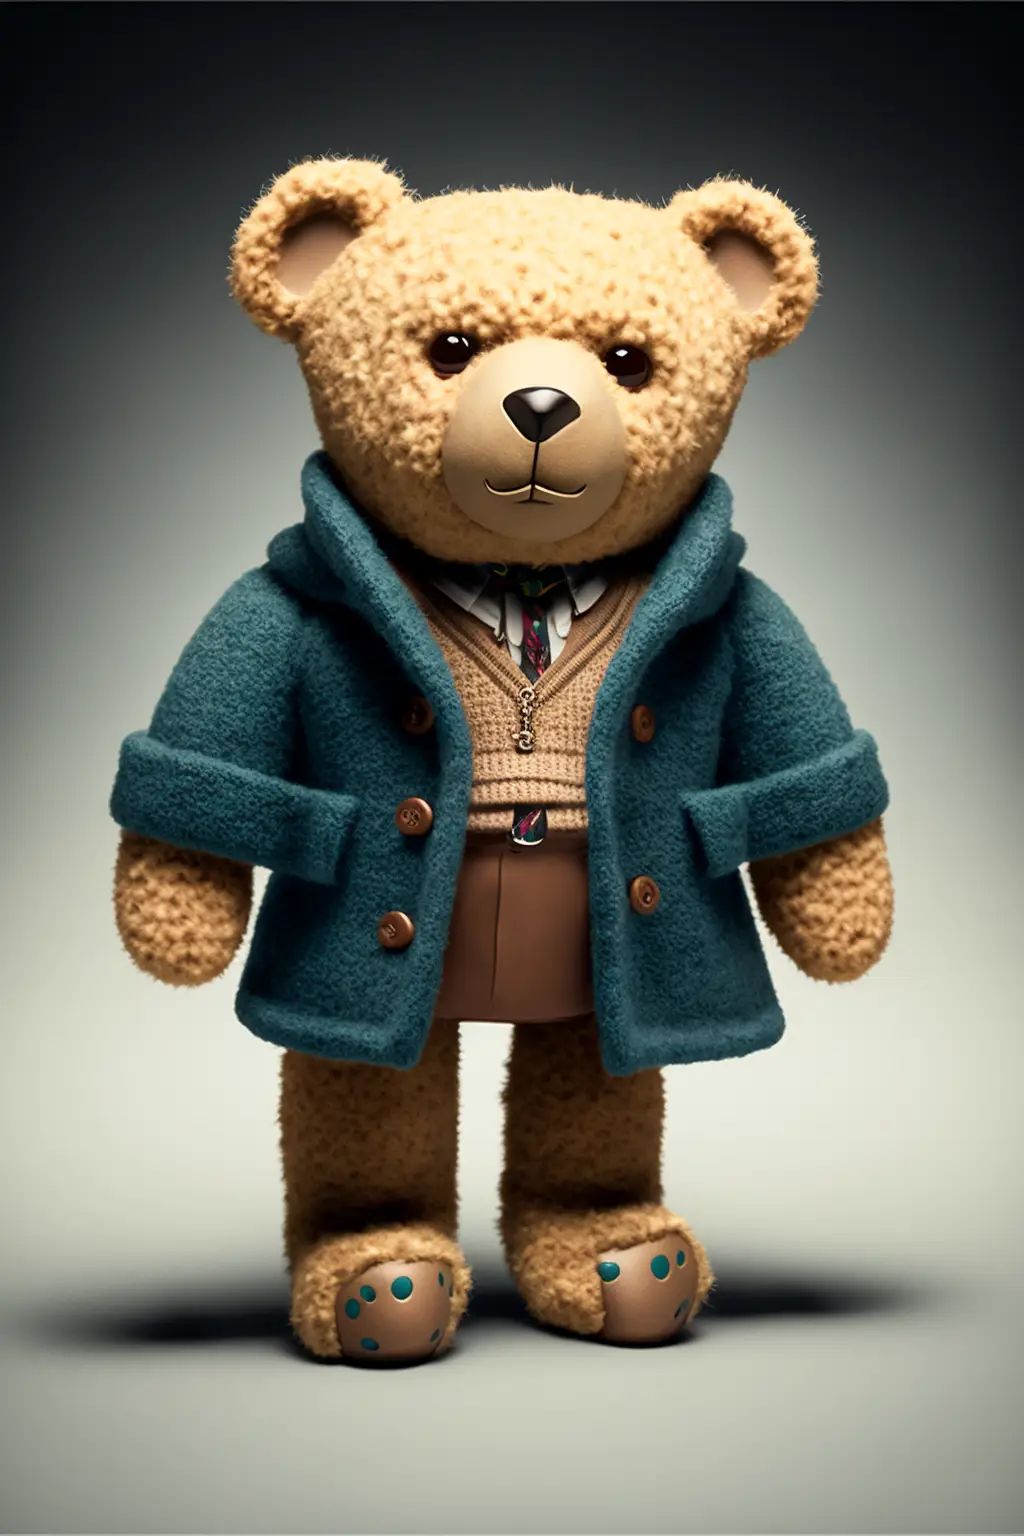 A Teddybear As A Fashion Model